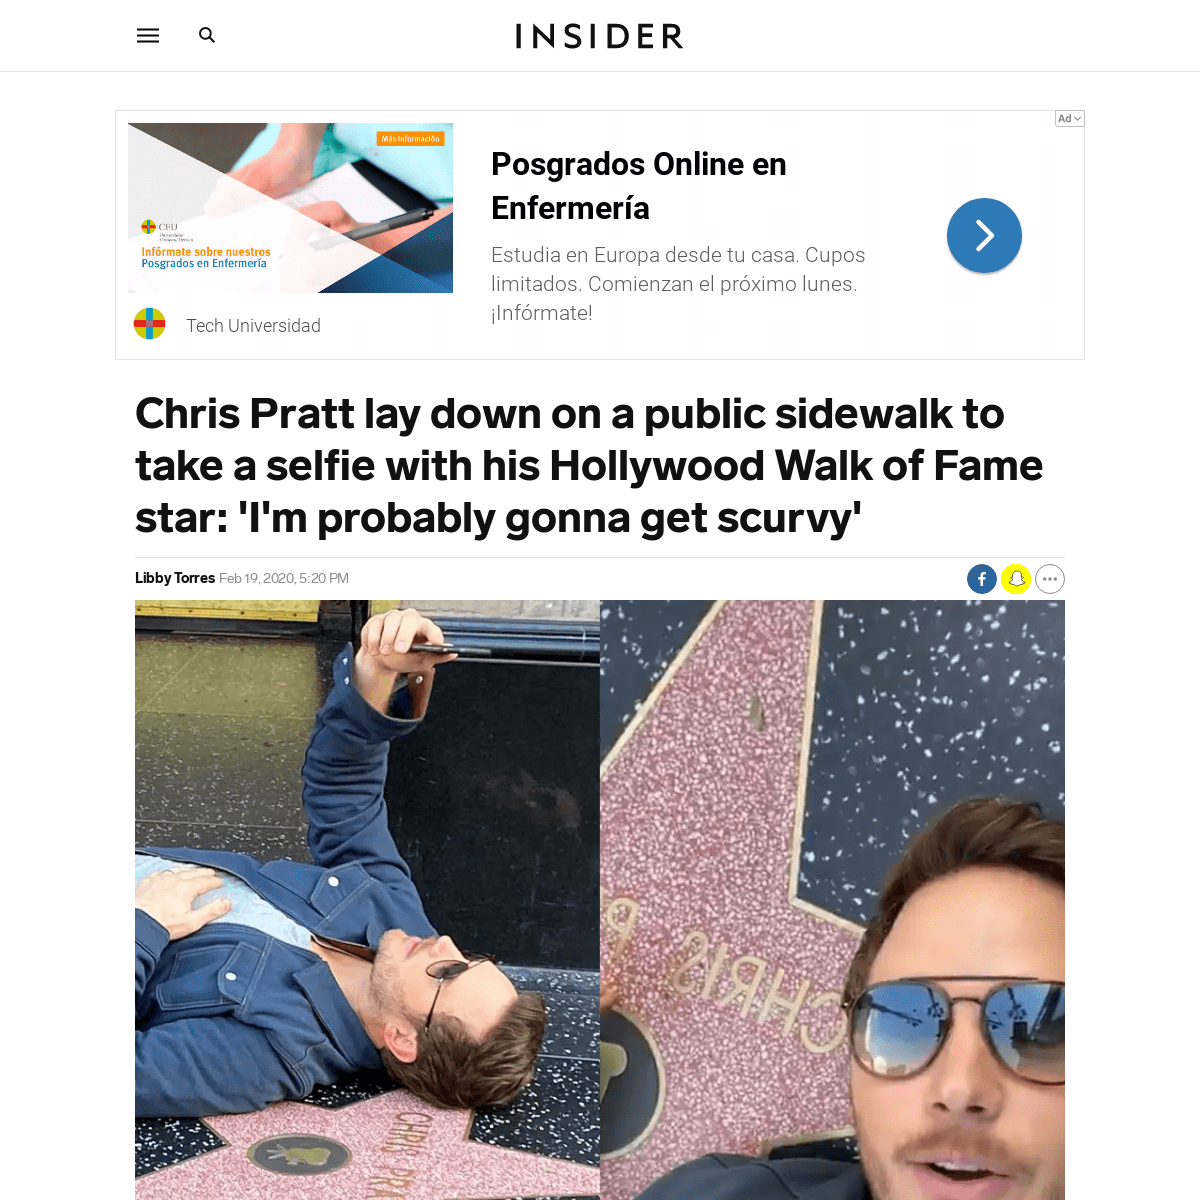 A complete backup of www.insider.com/chris-pratt-walk-of-fame-star-selfie-onward-2020-2